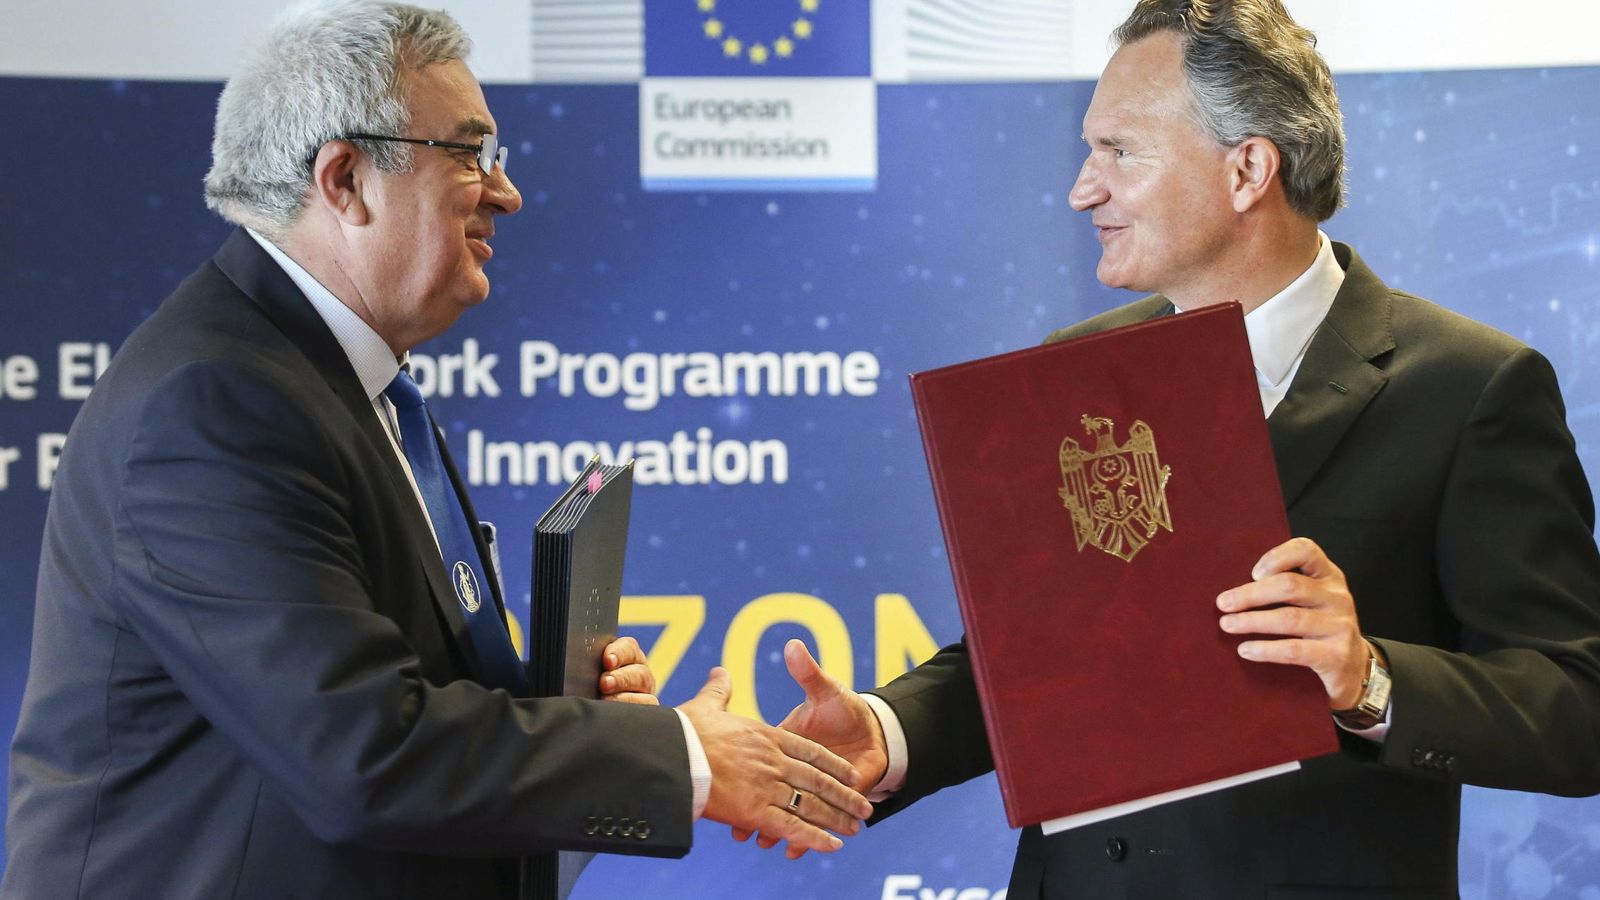 Foto: Momento en el que se firmó el programa Horizon 2020 en Bruselas el 1 de julio de 2014. (EFE)